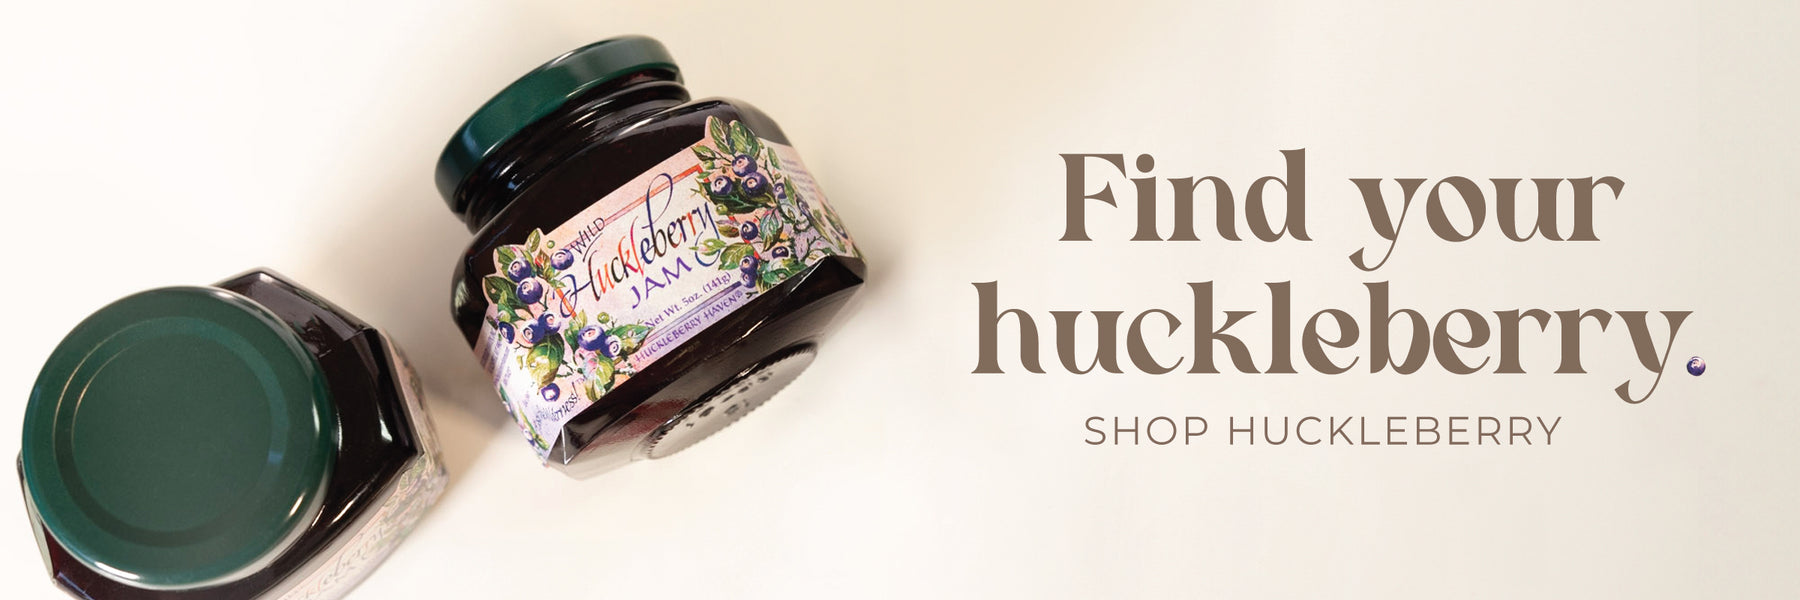 Huckleberry_Food_Website_Banner